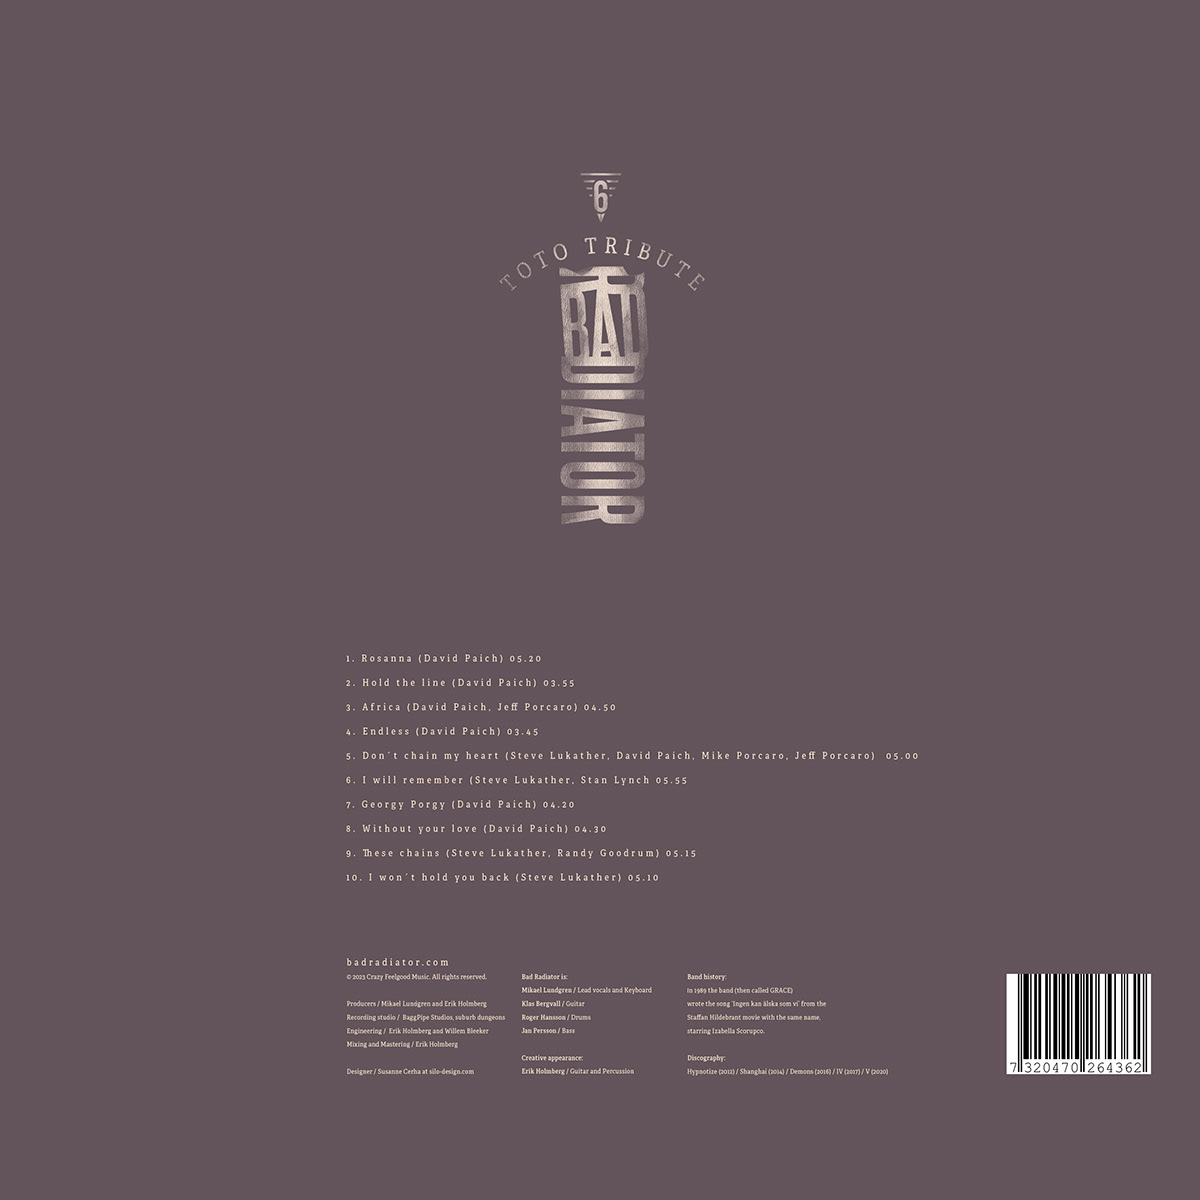 Adobe Portfolio Bad Radiator album cover TOTO tribute album Mikael Lundgren grace Silo Design Brooklyn Dumbo Album design music design design for music Prog rock